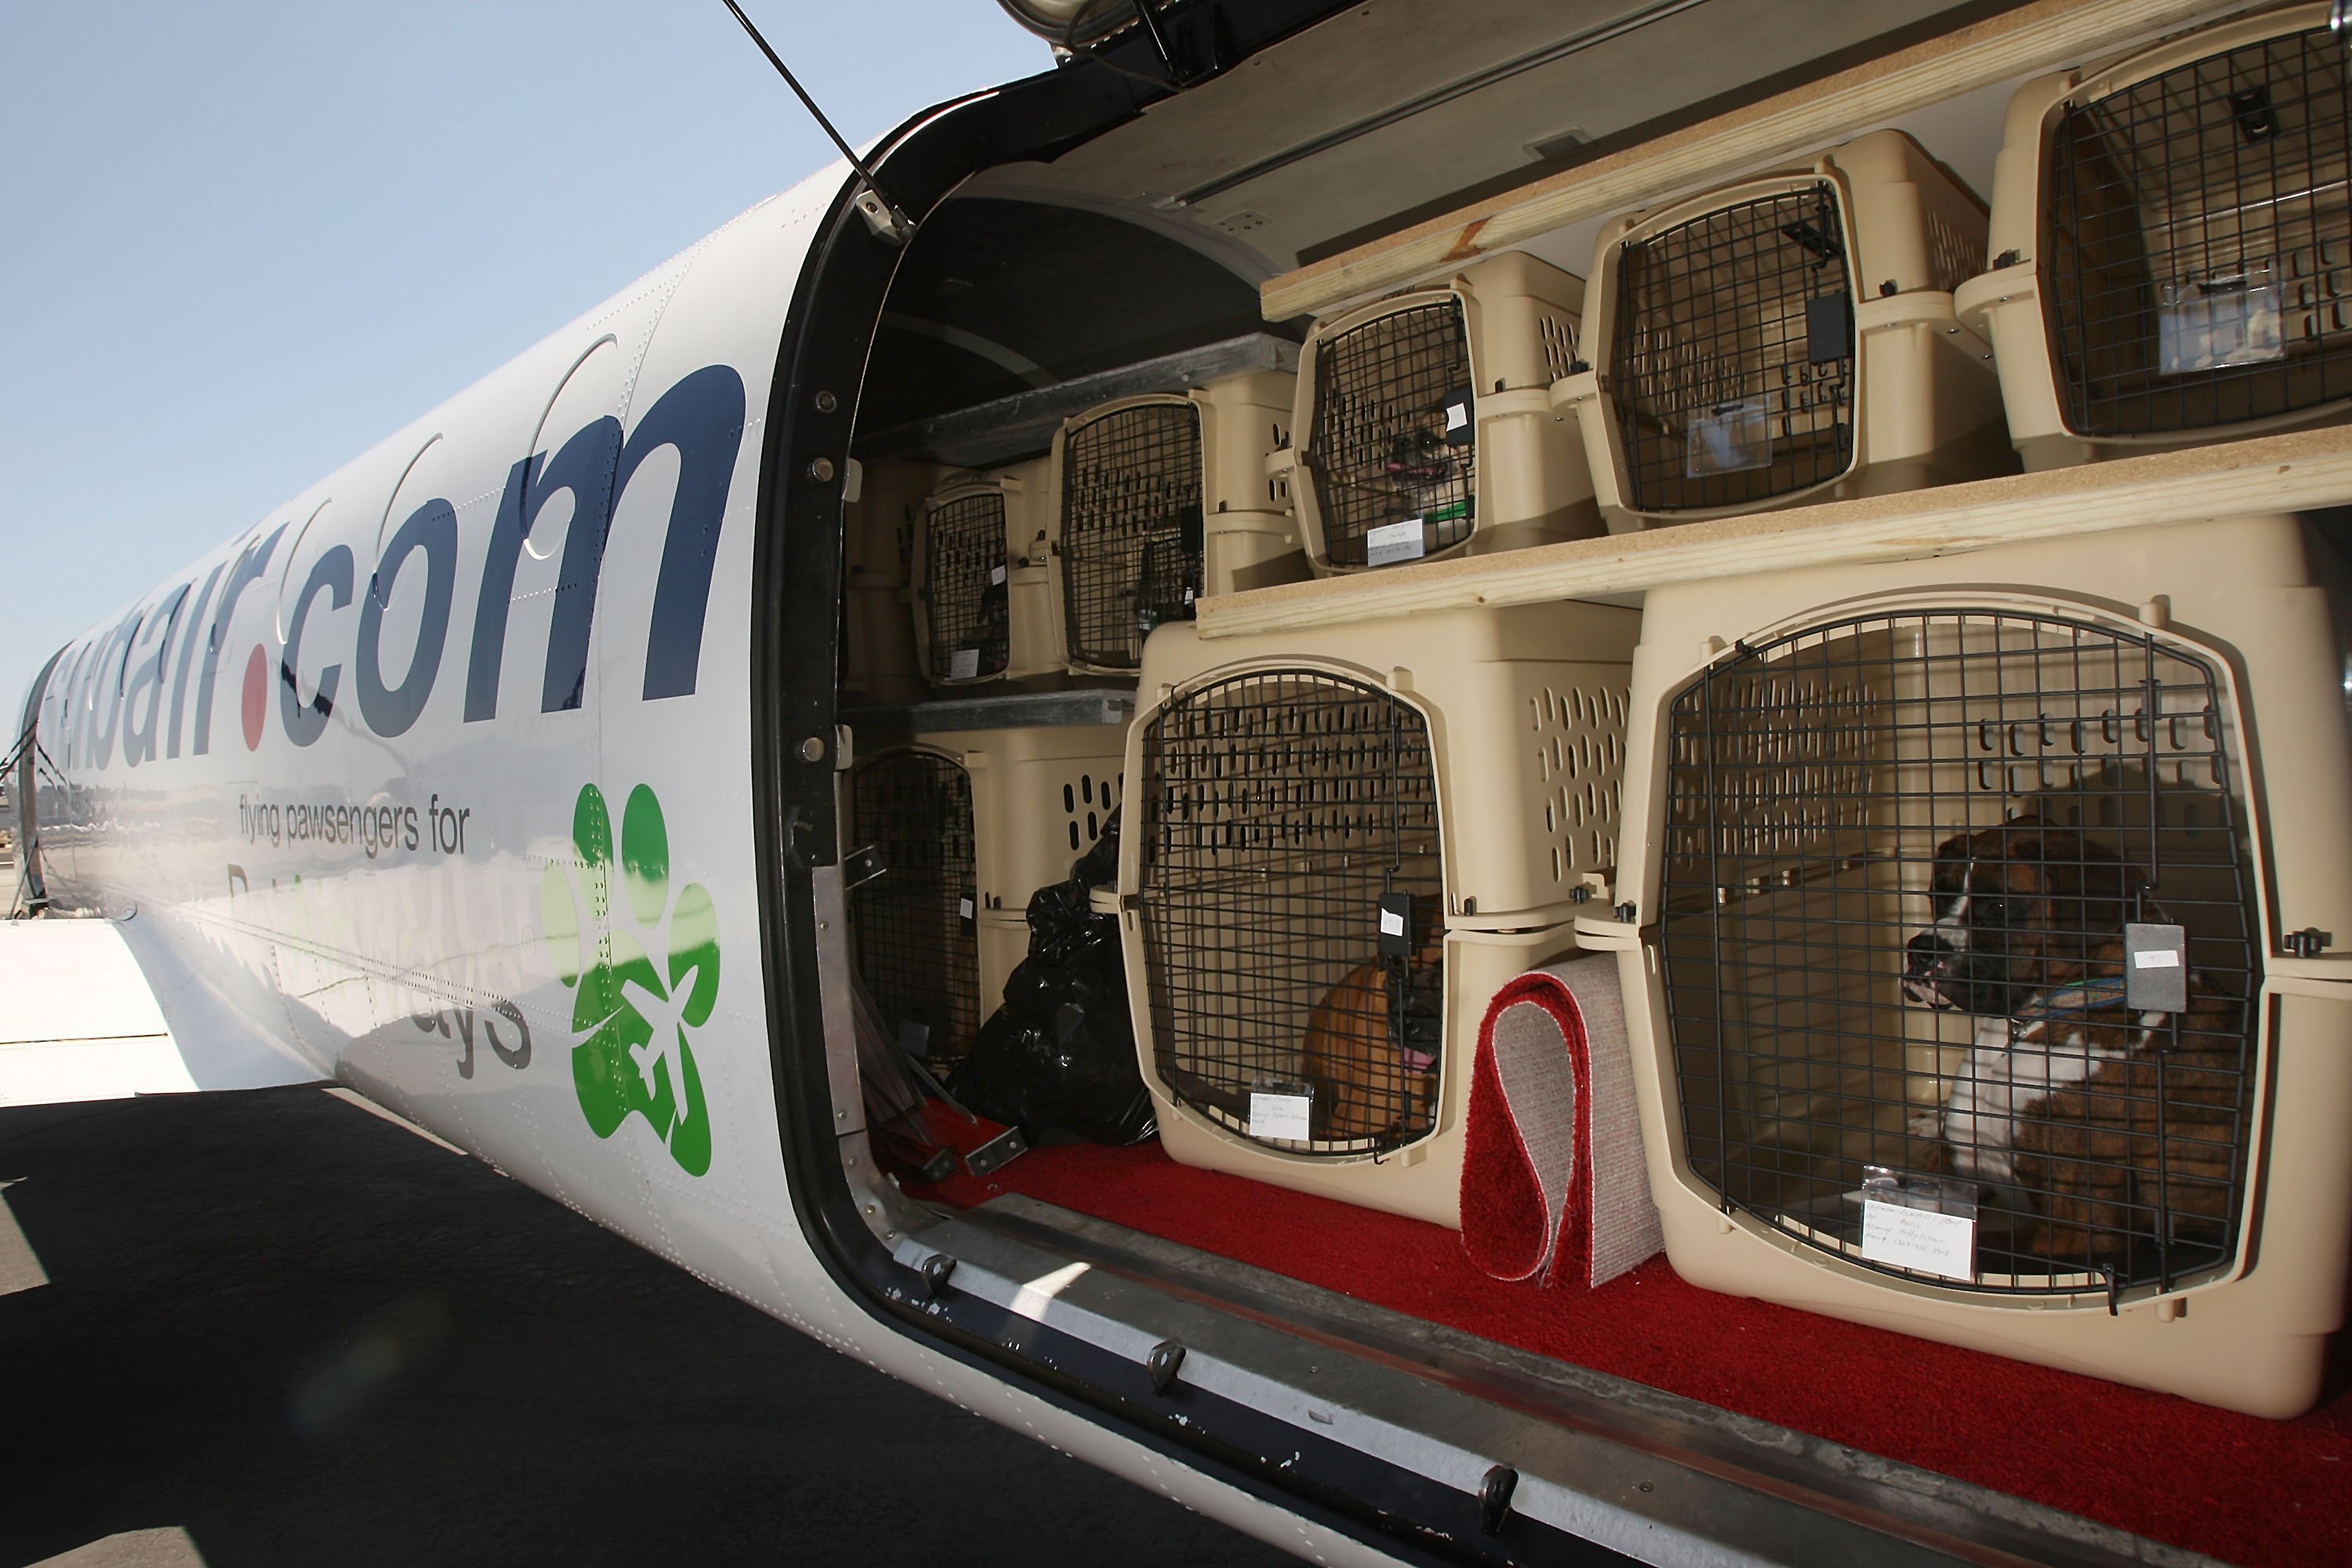 Resultado de imagen para viajar con perros en avion